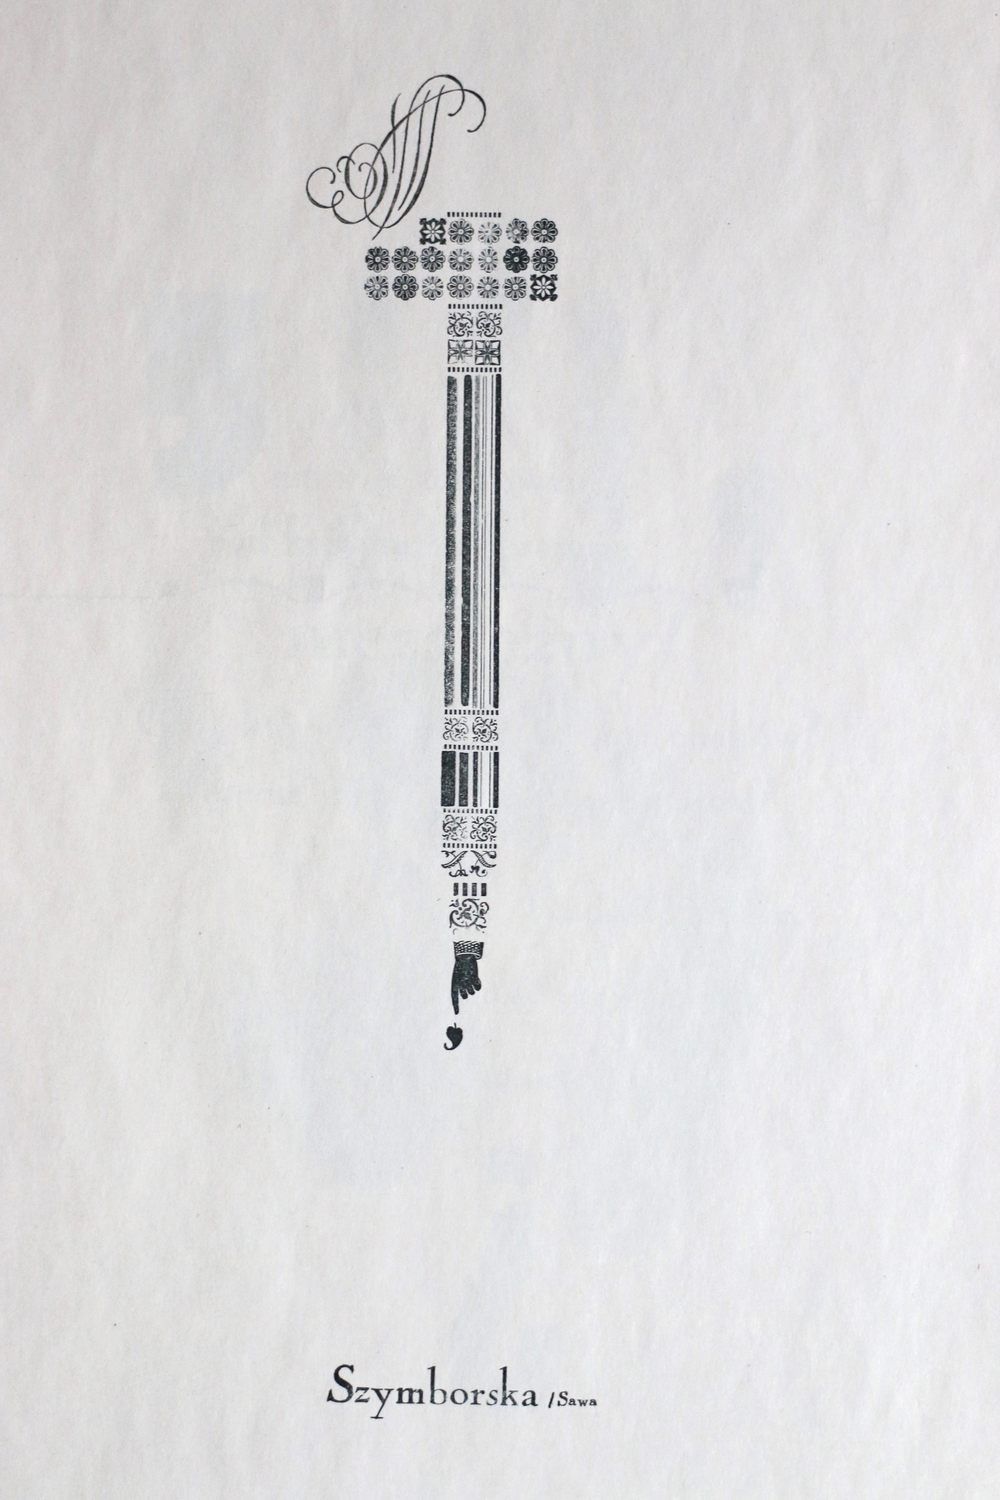 plakat wydarzenia "szczegóły i epizody" / Szymborska typograficznie